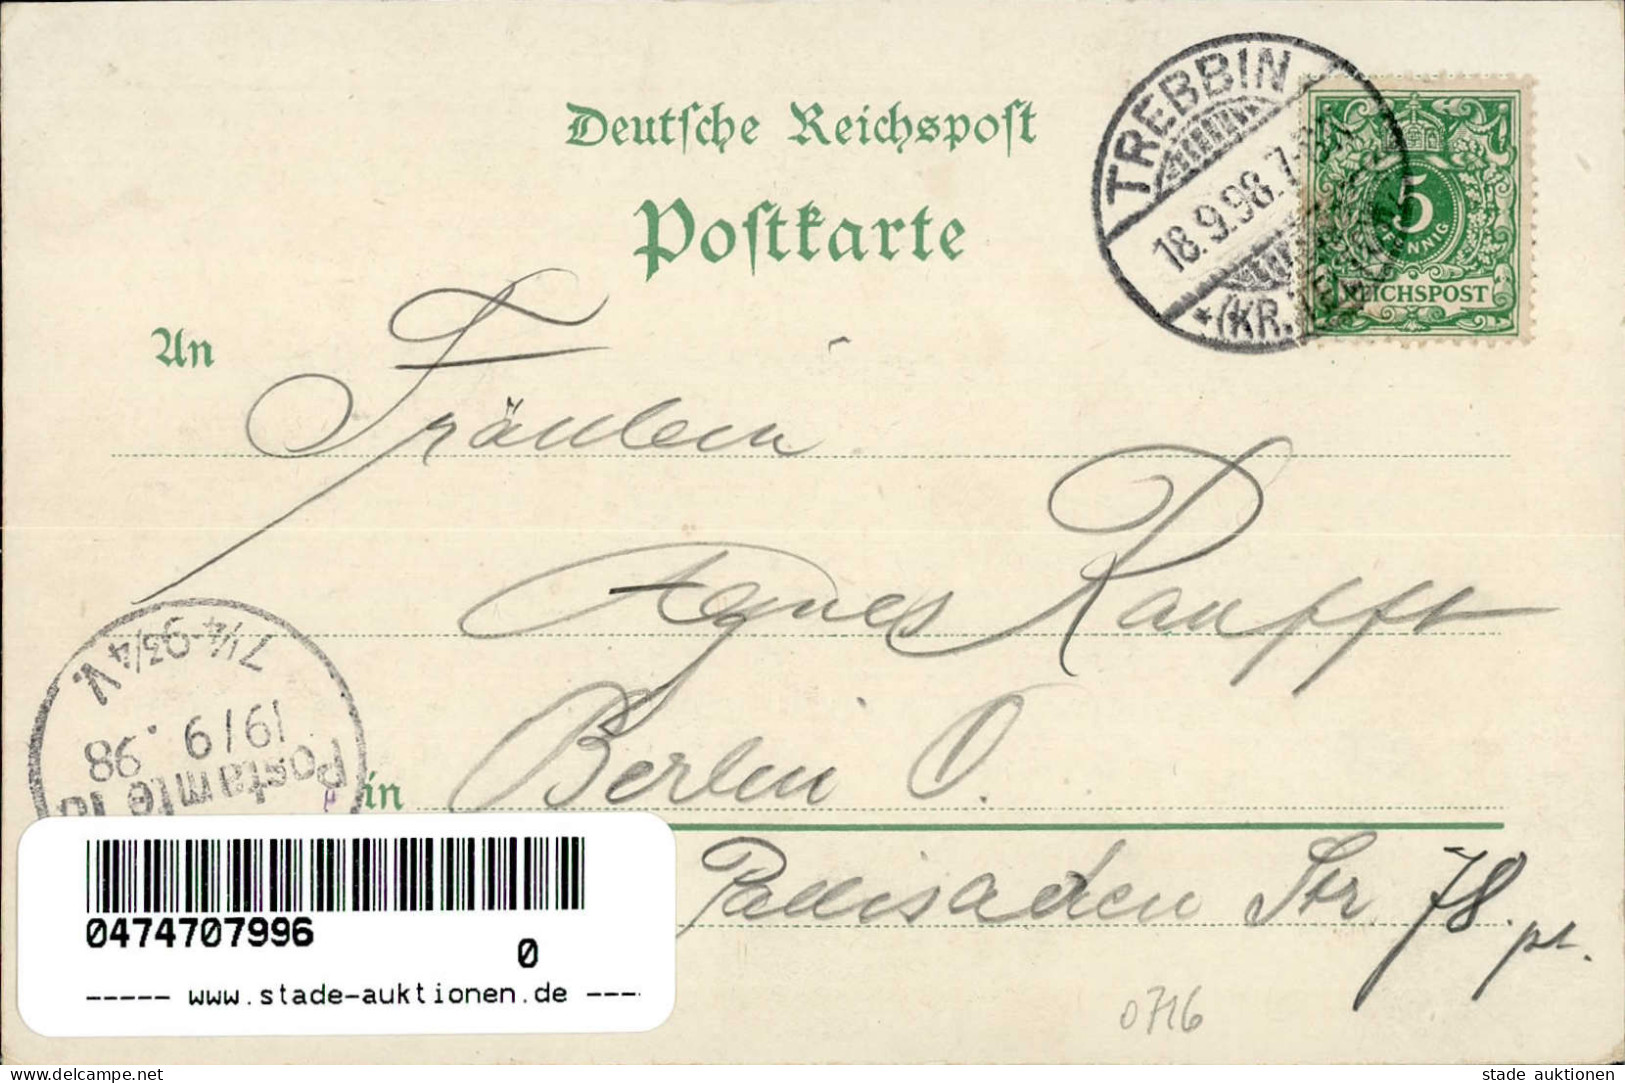 Trebbin (o-1712) Schützenhaus Radfahrer-Bundes-Hotel Kriegerdenkmal Postamt 1898 II (Stauchung) - Other & Unclassified